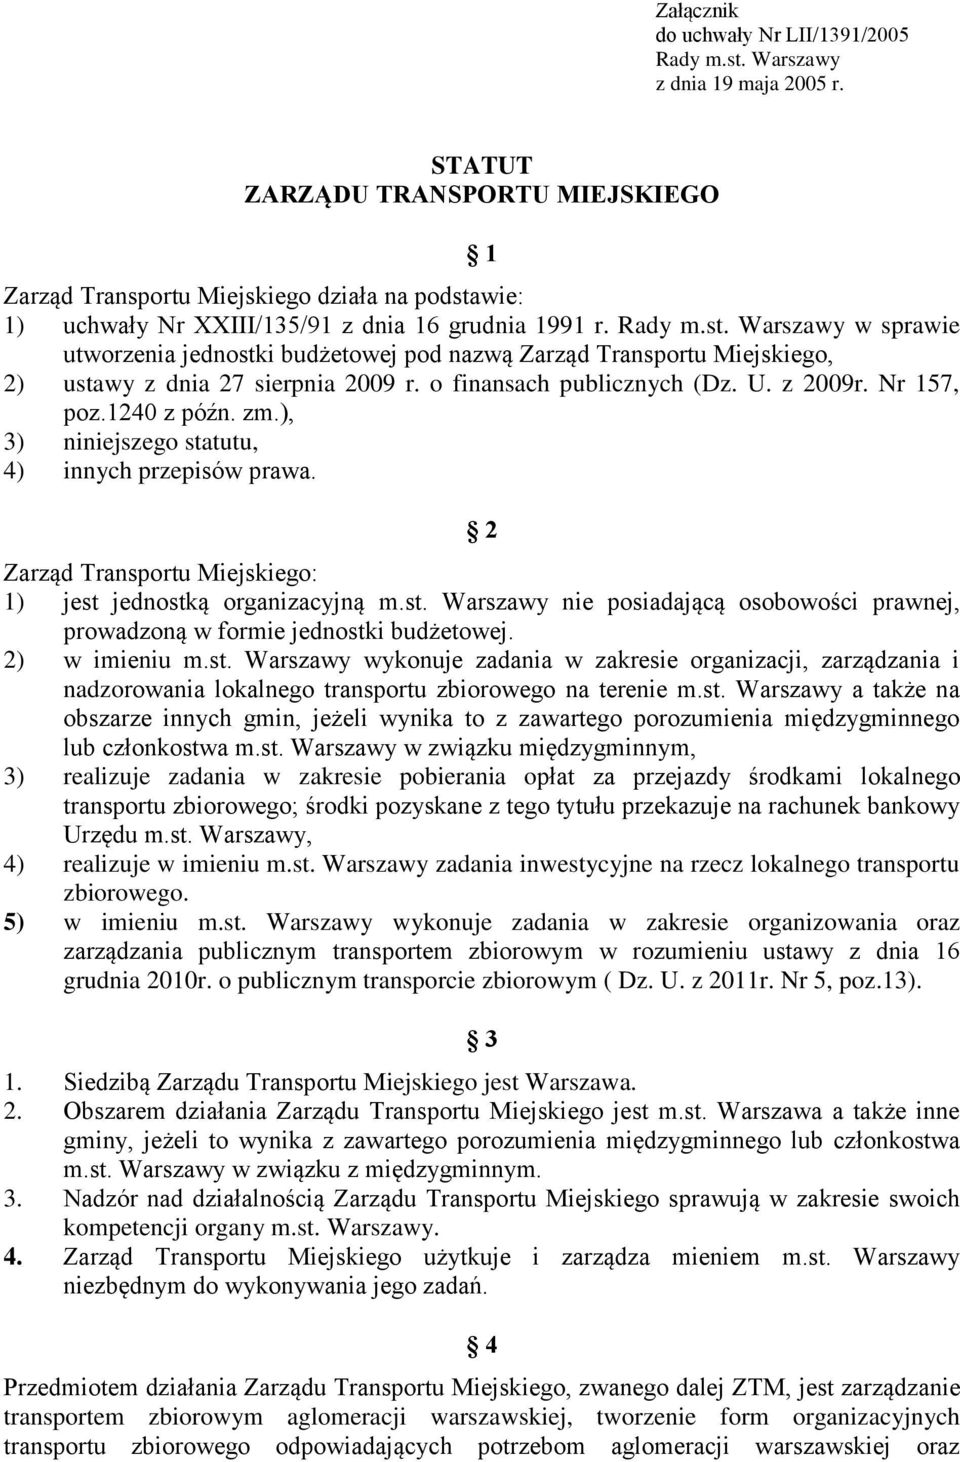 wie: 1) uchwały Nr XXIII/135/91 z dnia 16 grudnia 1991 r. Rady m.st. Warszawy w sprawie utworzenia jednostki budżetowej pod nazwą Zarząd Transportu Miejskiego, 2) ustawy z dnia 27 sierpnia 2009 r.